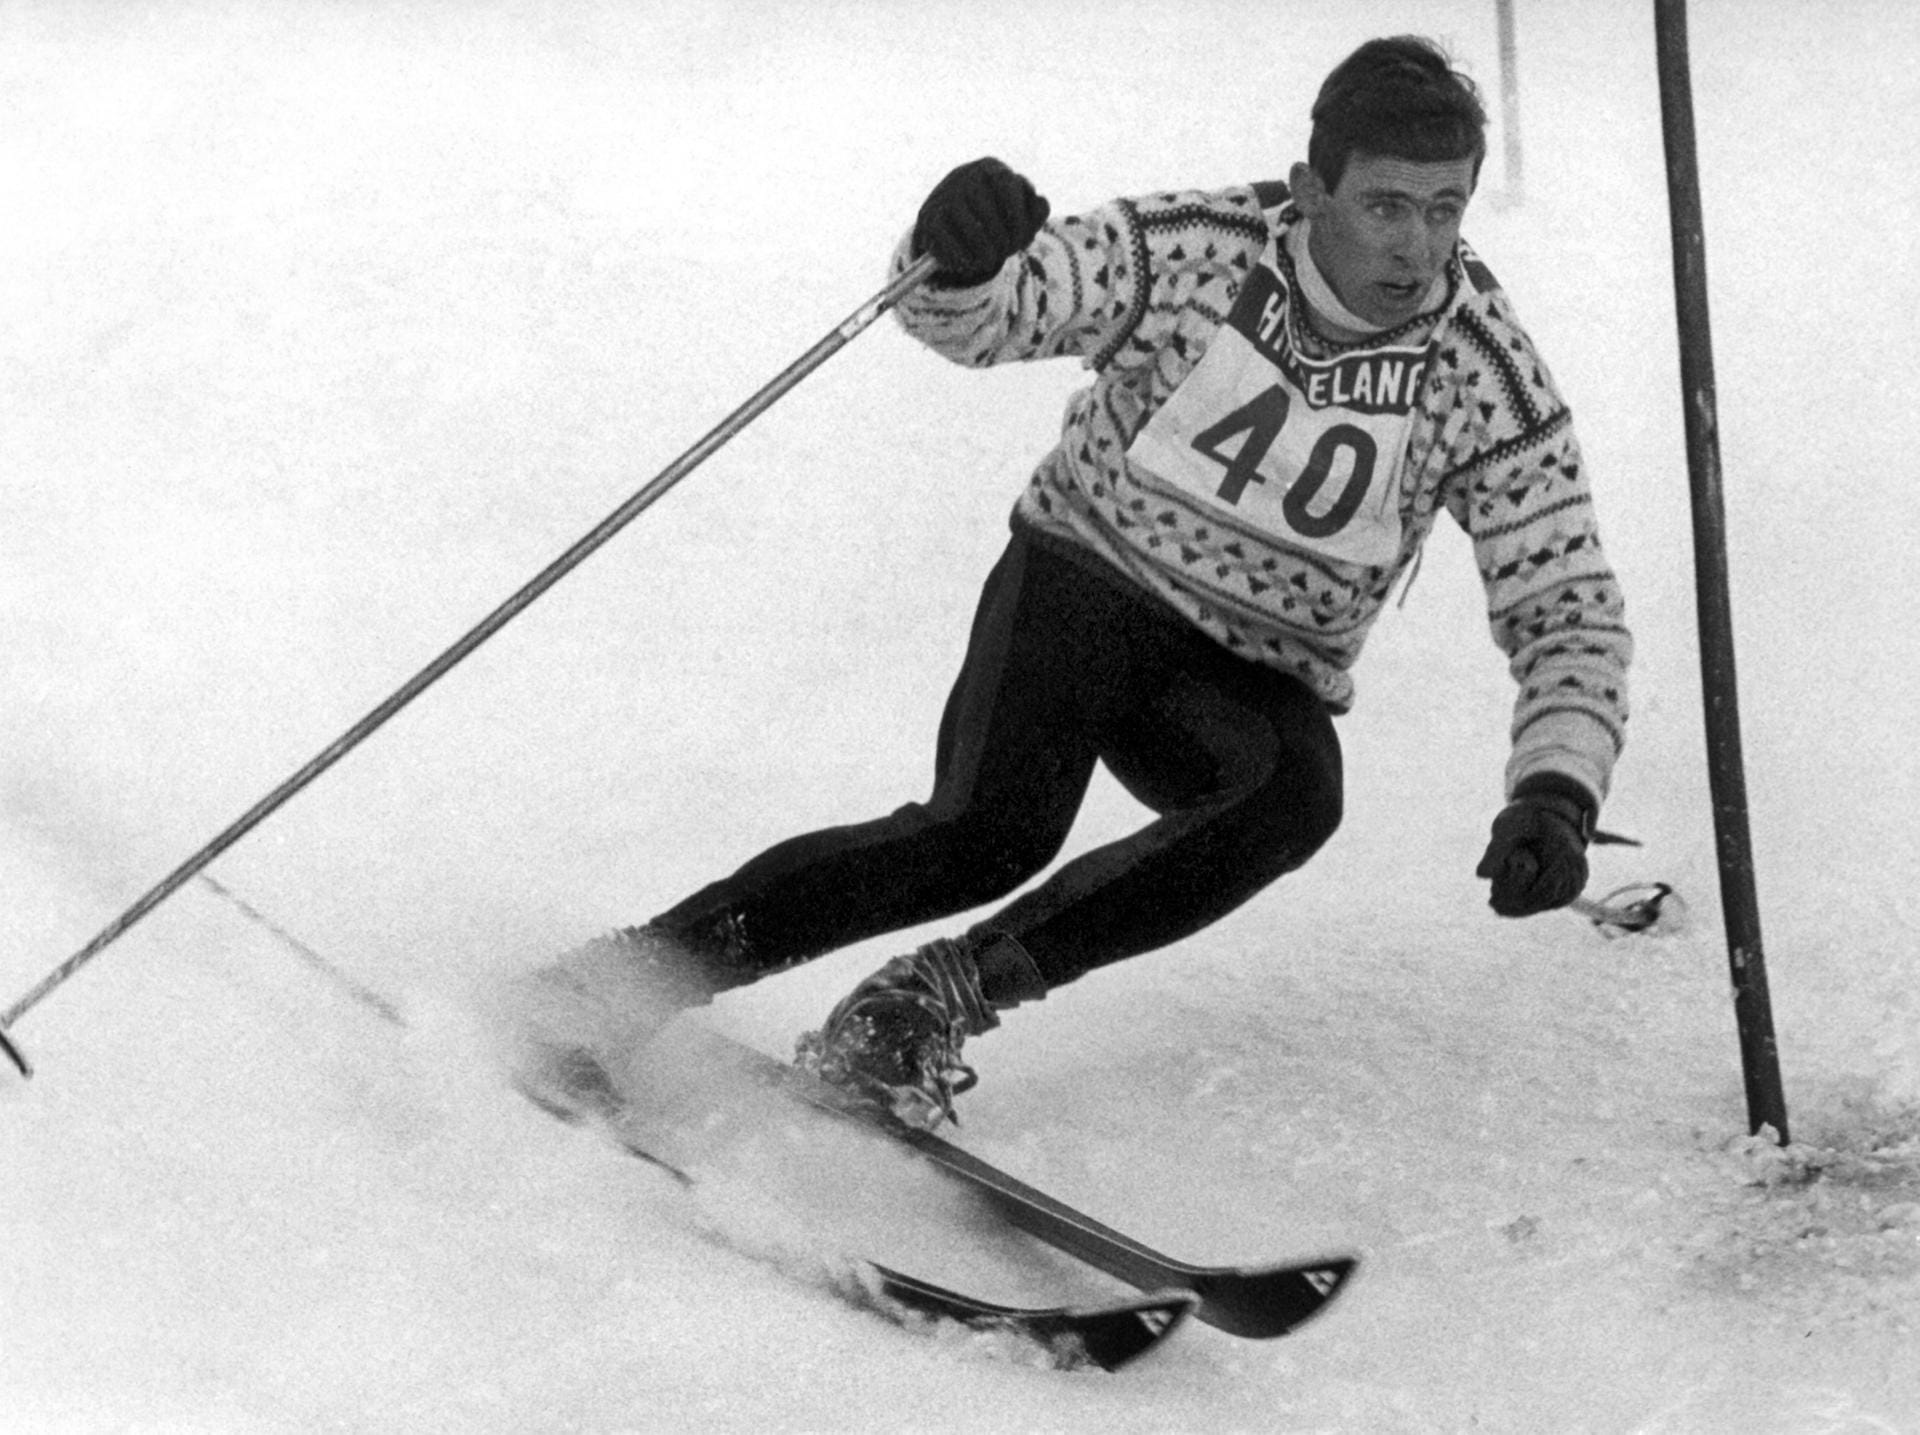 Auch als Skisportler hatte Bogner einige Erfolge: Mit 17 gewann er als erster Deutscher das Lauberhorn-Abfahrts-Rennen in Wengen und holte später mehrere Titel im Slalom und in der Kombination. Hier ist 1966 beim Slalom der Herren in Hindelang, Bayern, zu sehen.